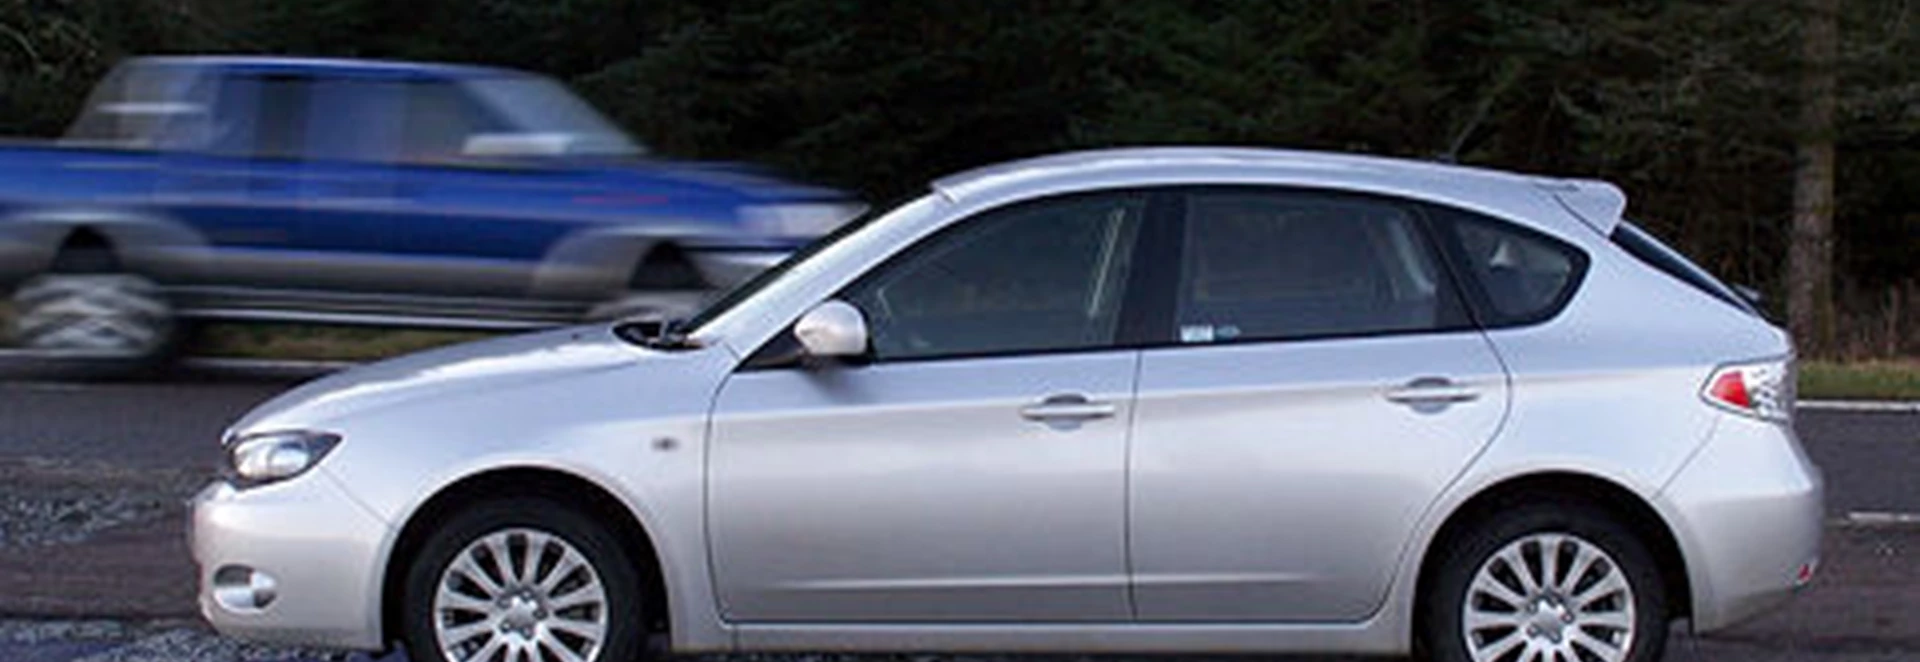 Subaru Impreza 2.0R (2007) 